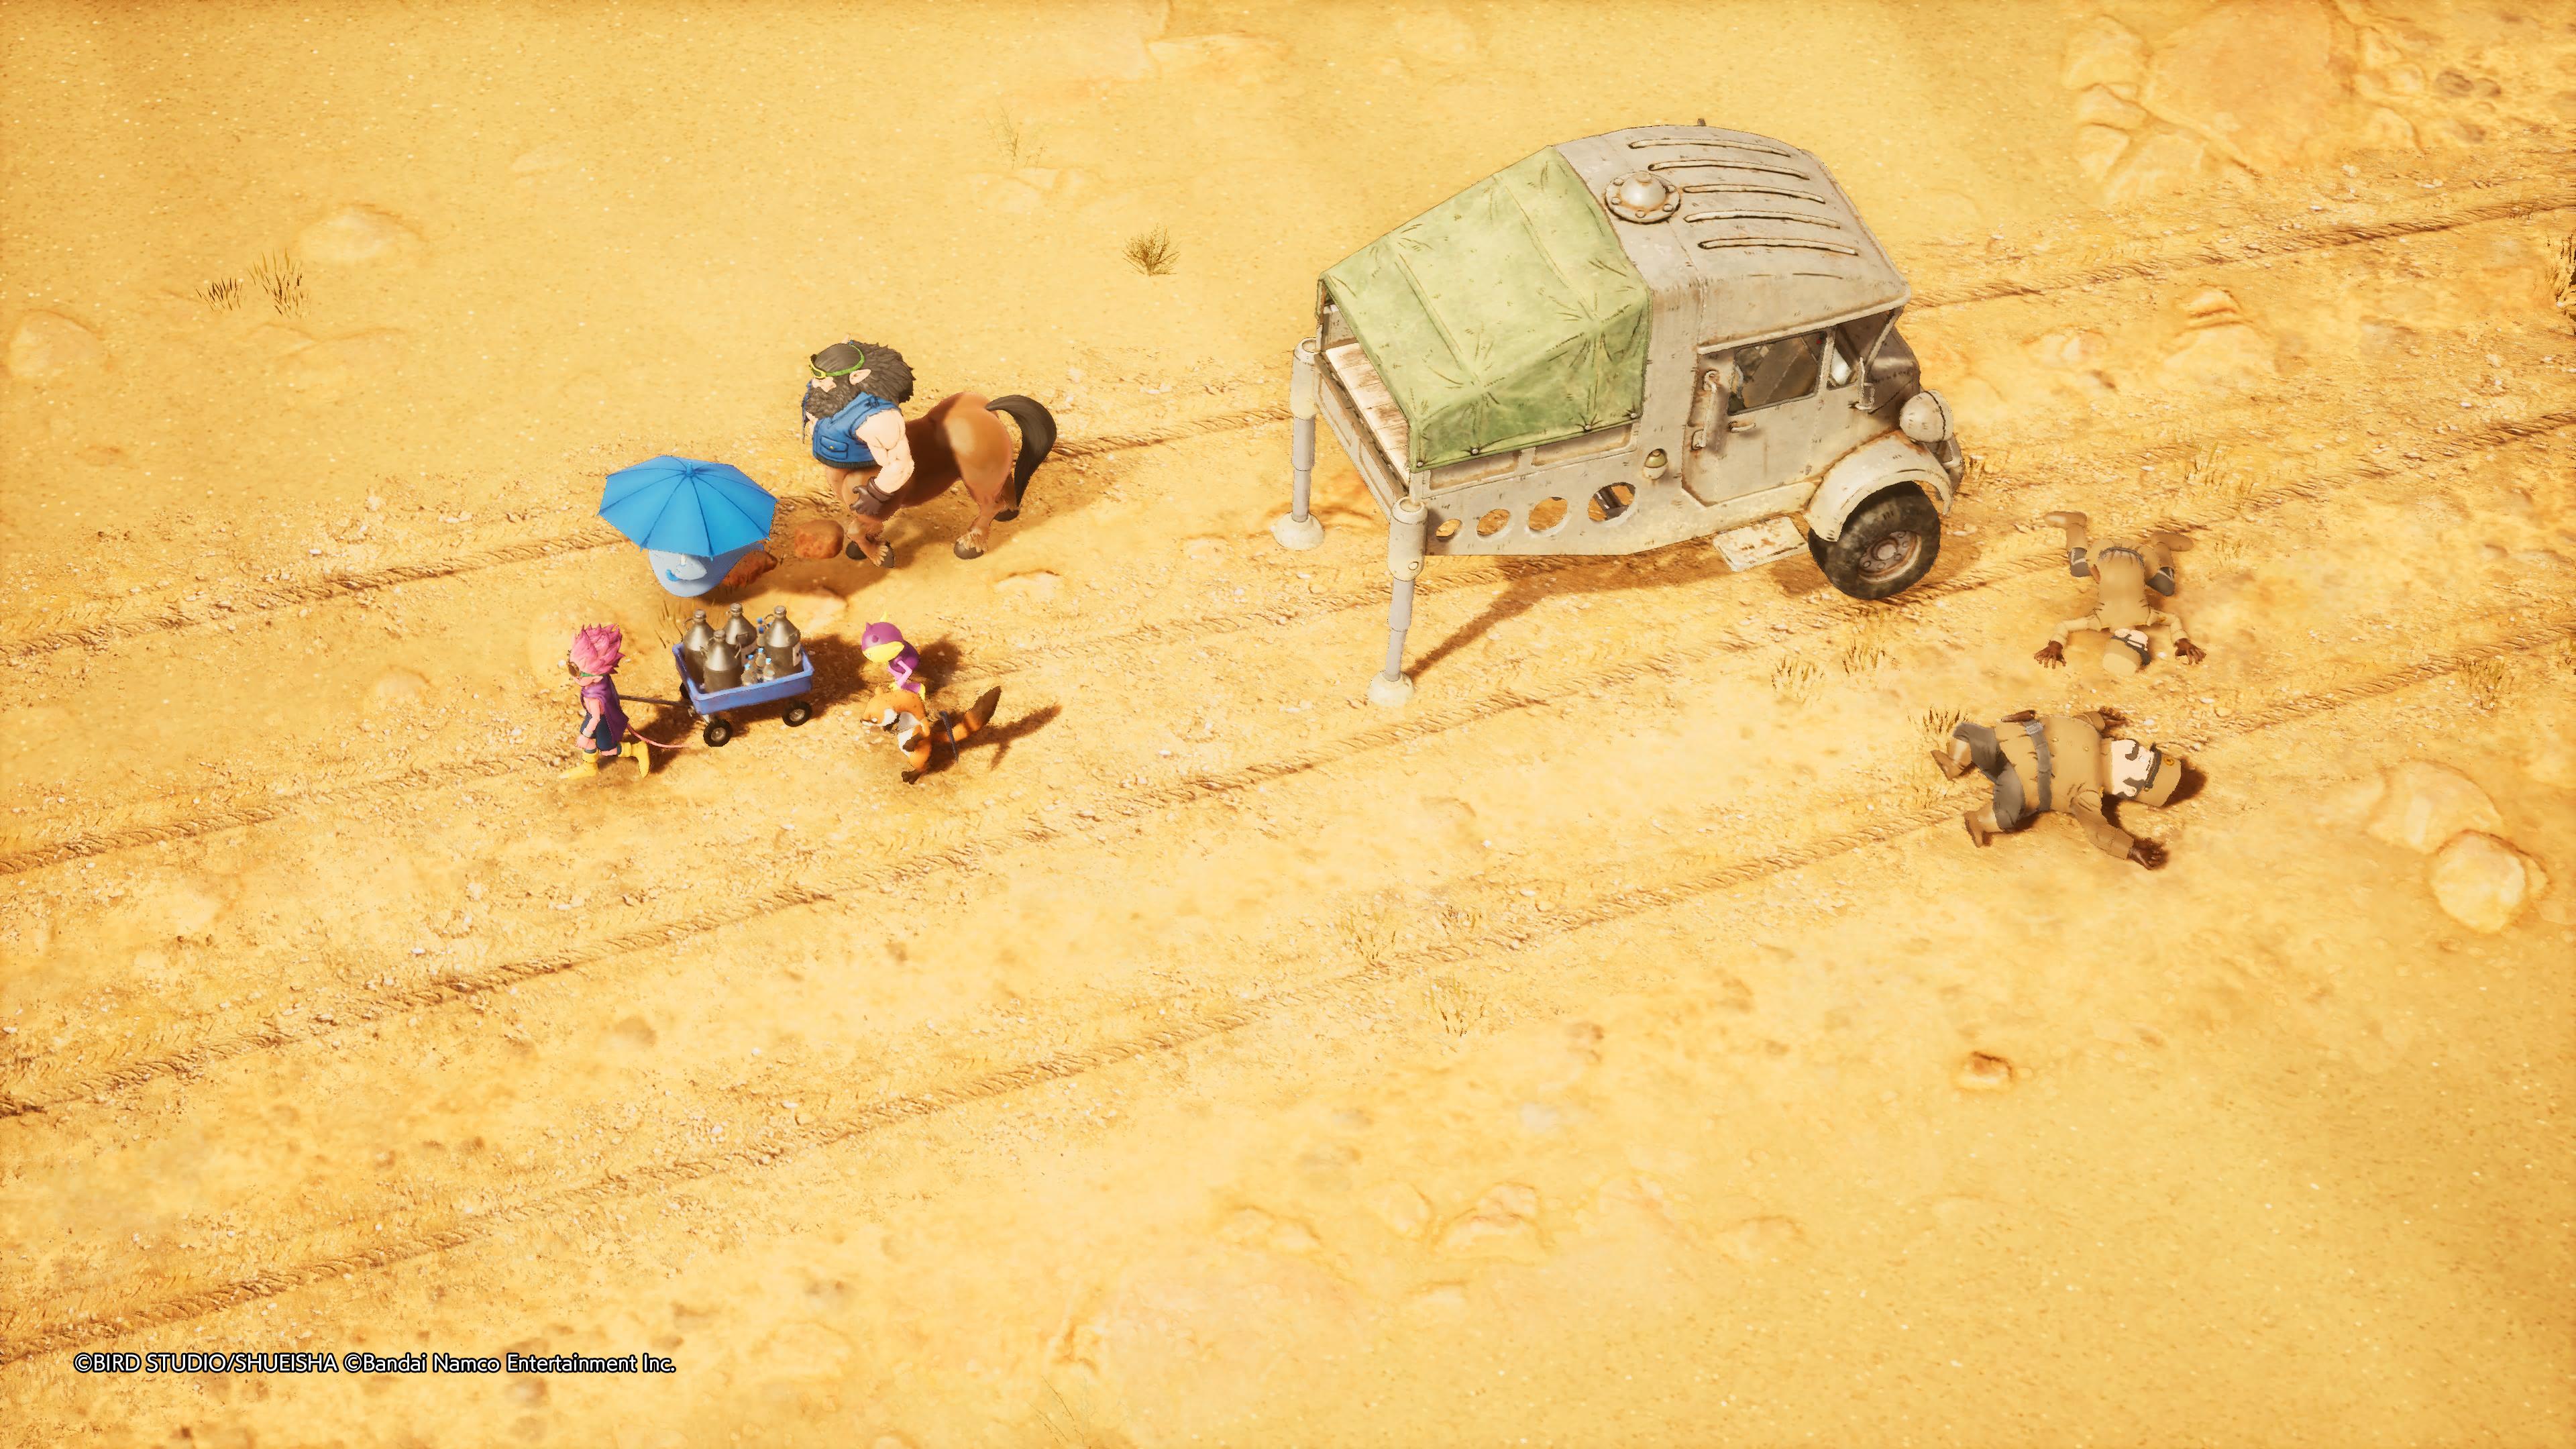 Reseña: Sand Land, una fiel adaptación de la obra de Akira Toriyama 22